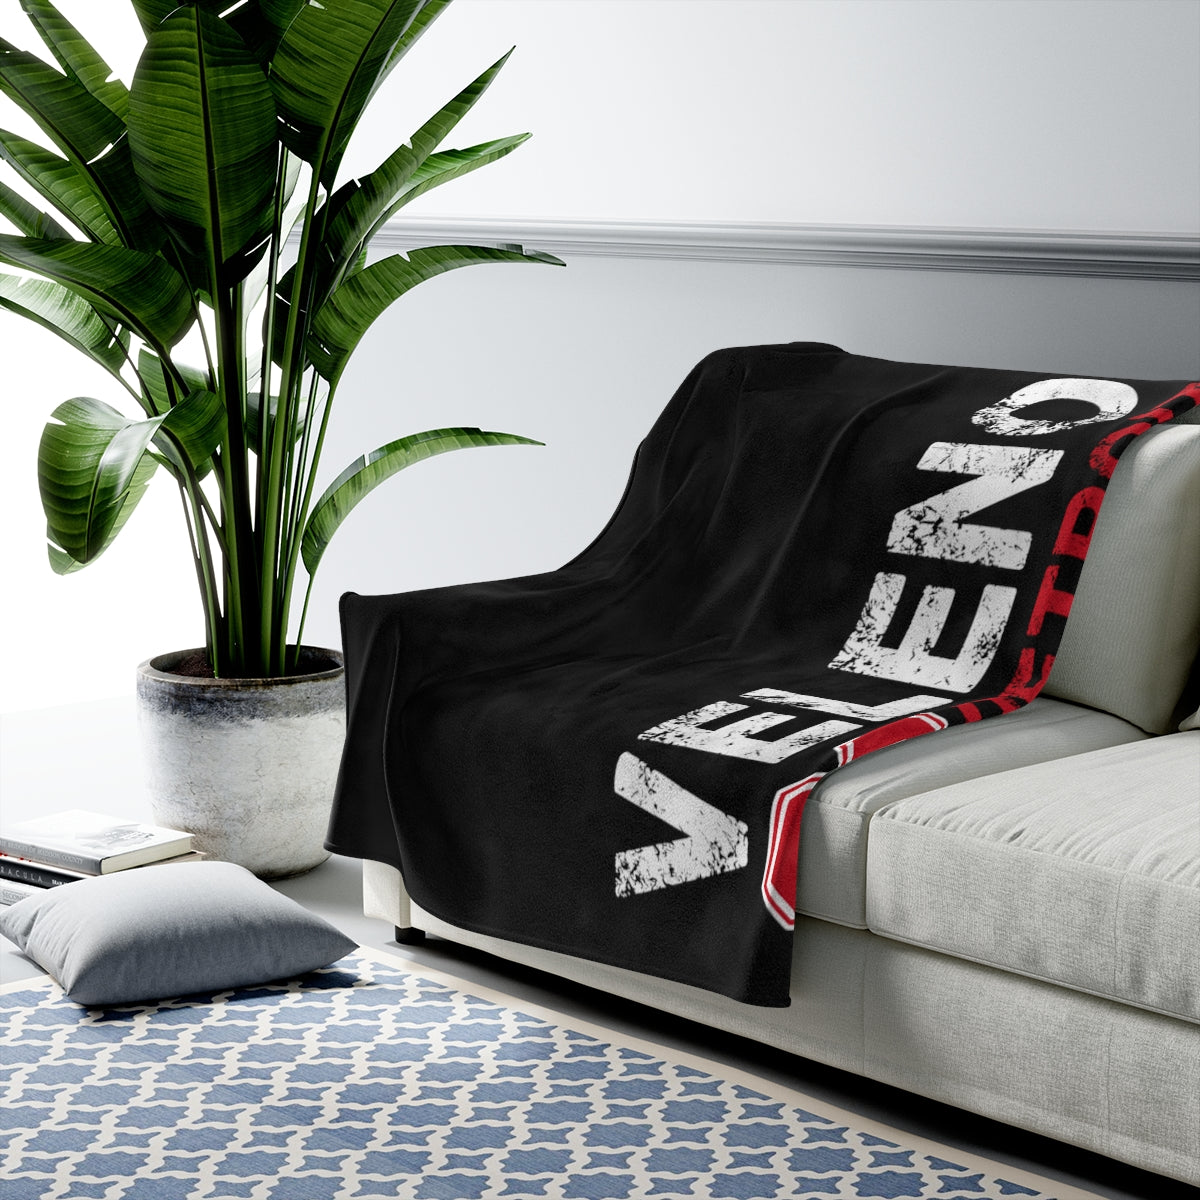 Veleno 90 Detroit Hockey Velveteen Plush Blanket